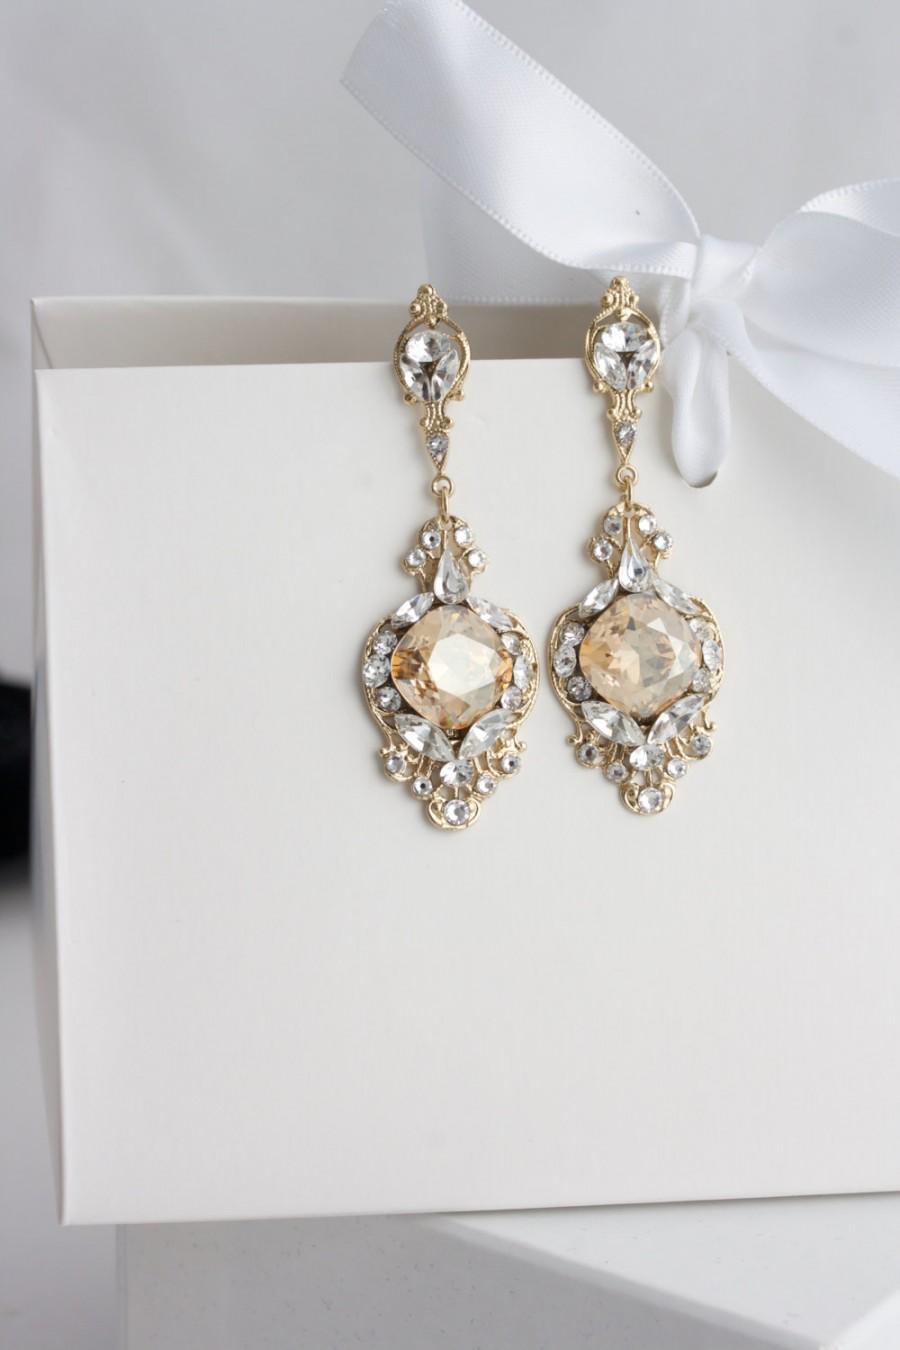 Mariage - Gold Crystal Bridal Earrings Golden Shadow Crystal Rhinestone Champagne Wedding Earrings ESTELLA